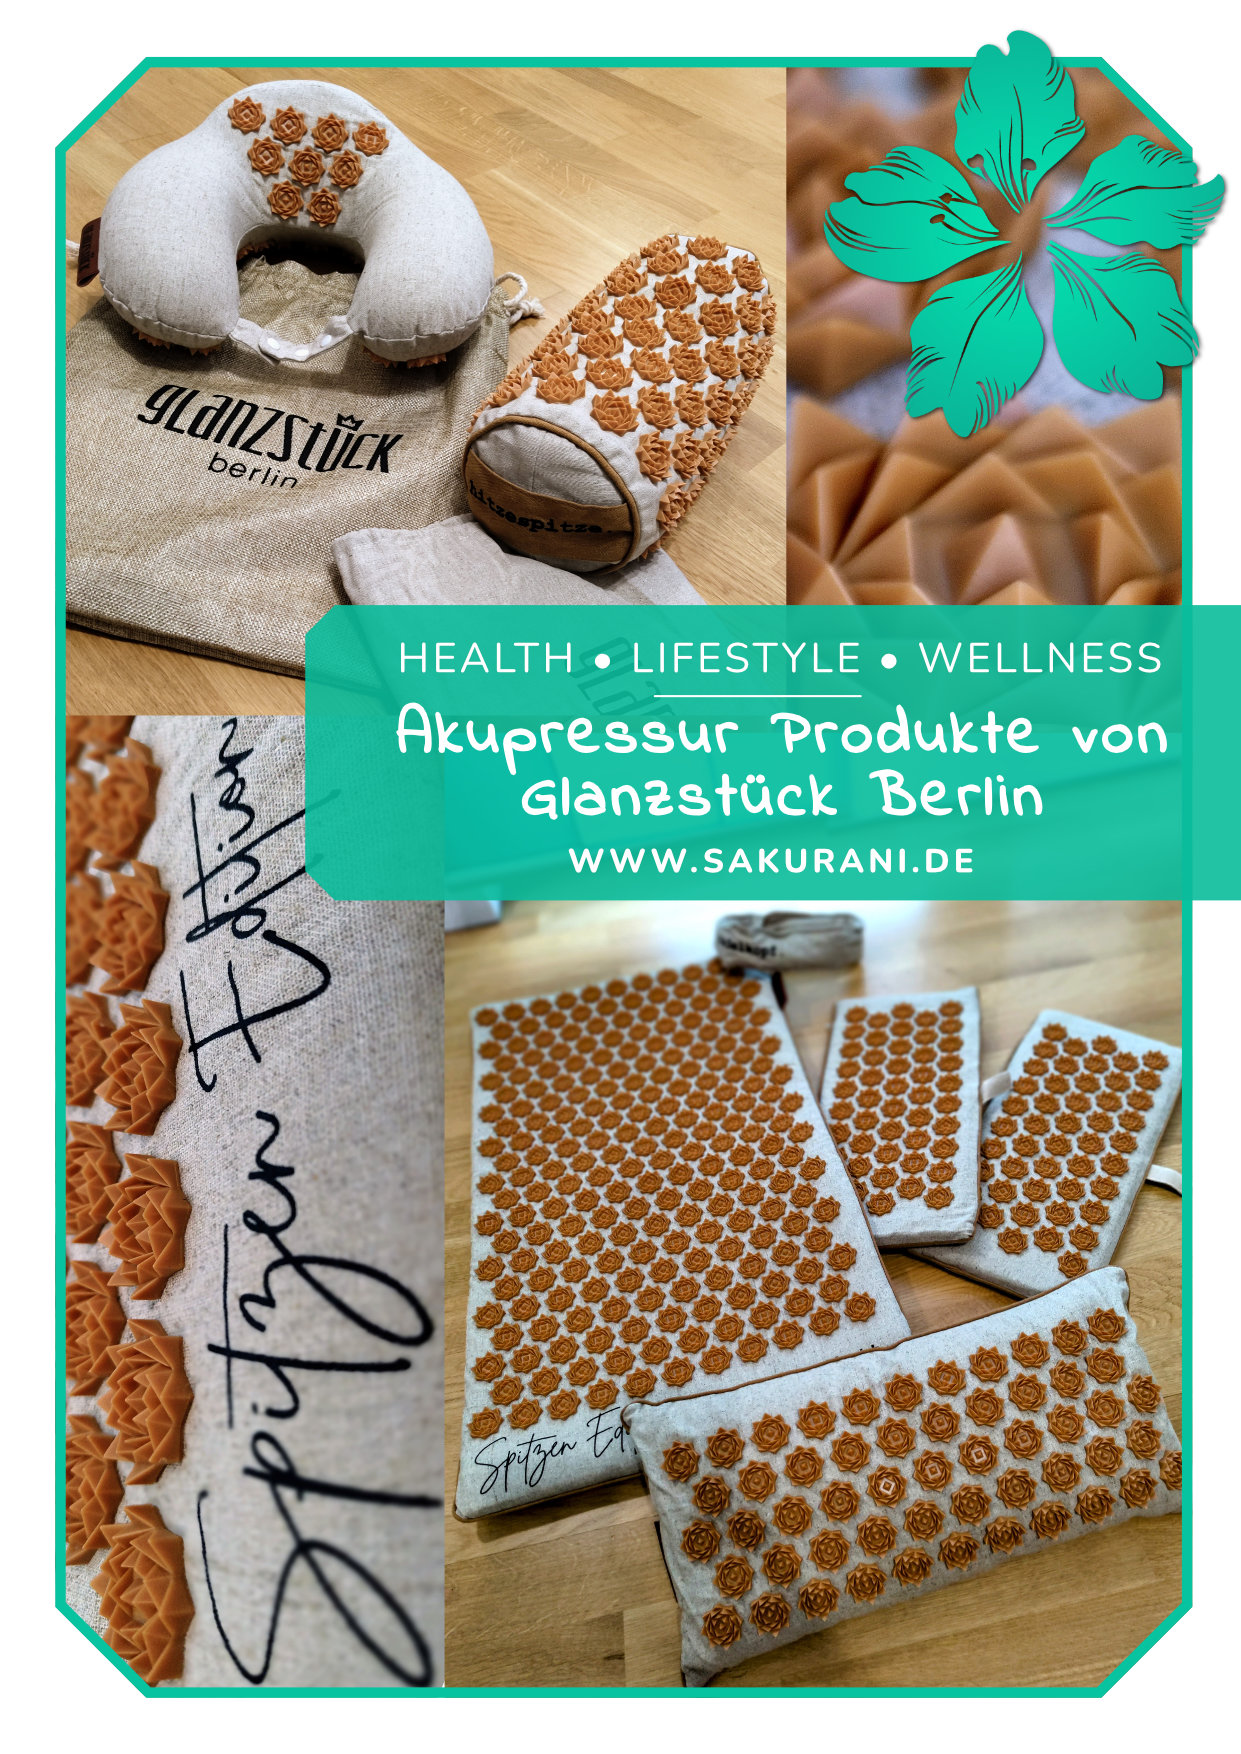 Blogbeitrag zu den Akupressur-Produkten von Glanzstück Berlin auf sakurani.de